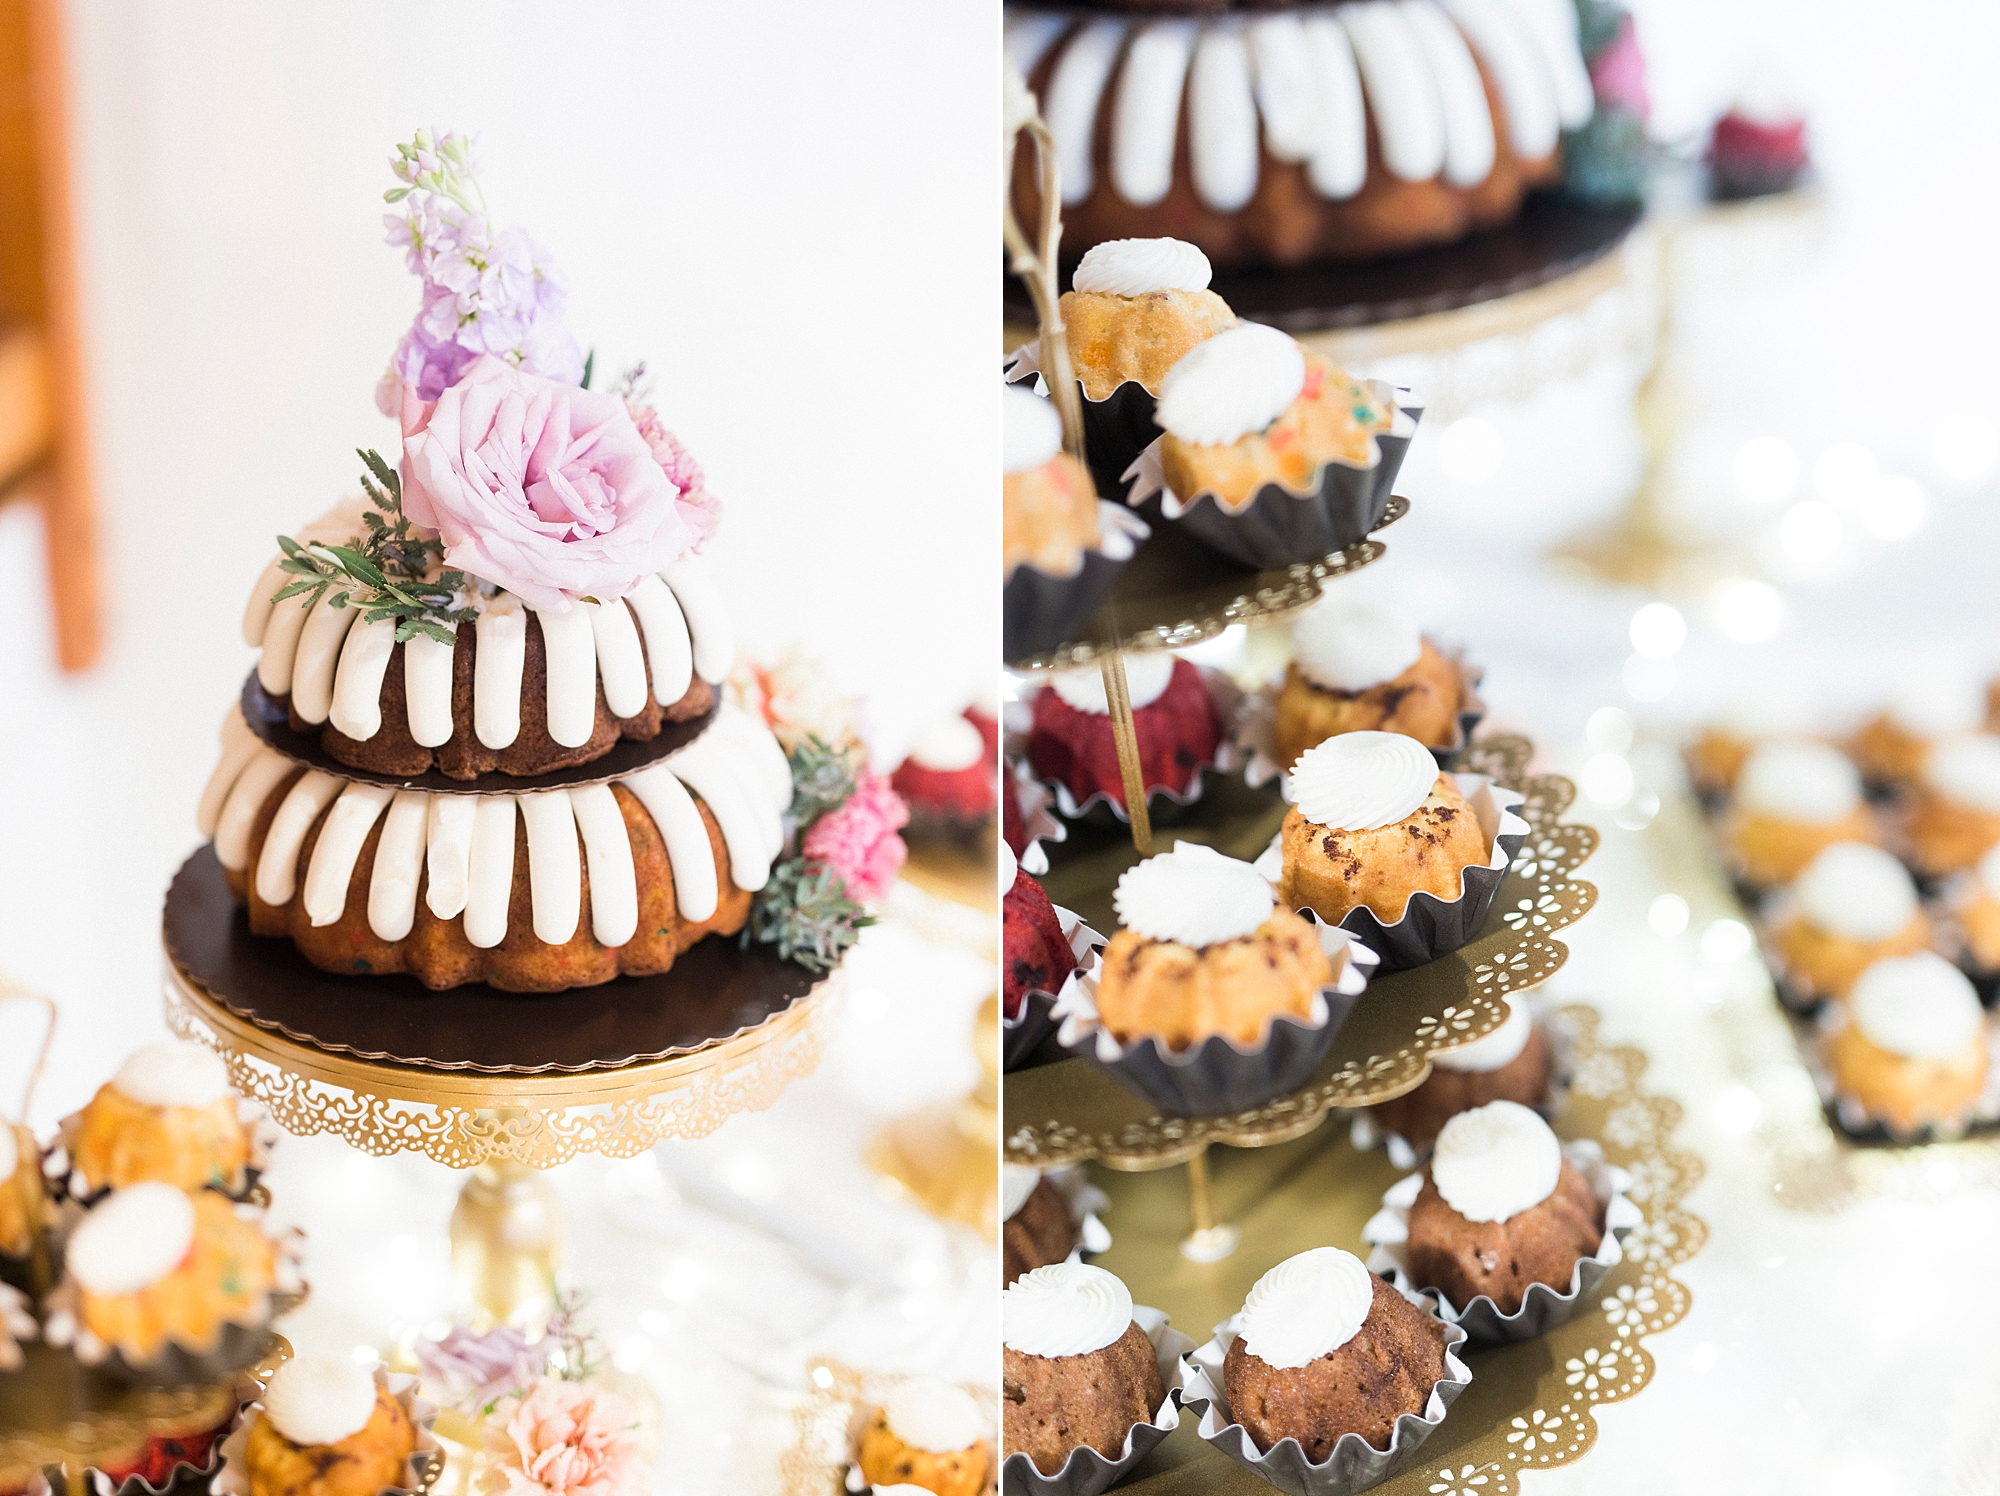 bundt cake display for wedding reception